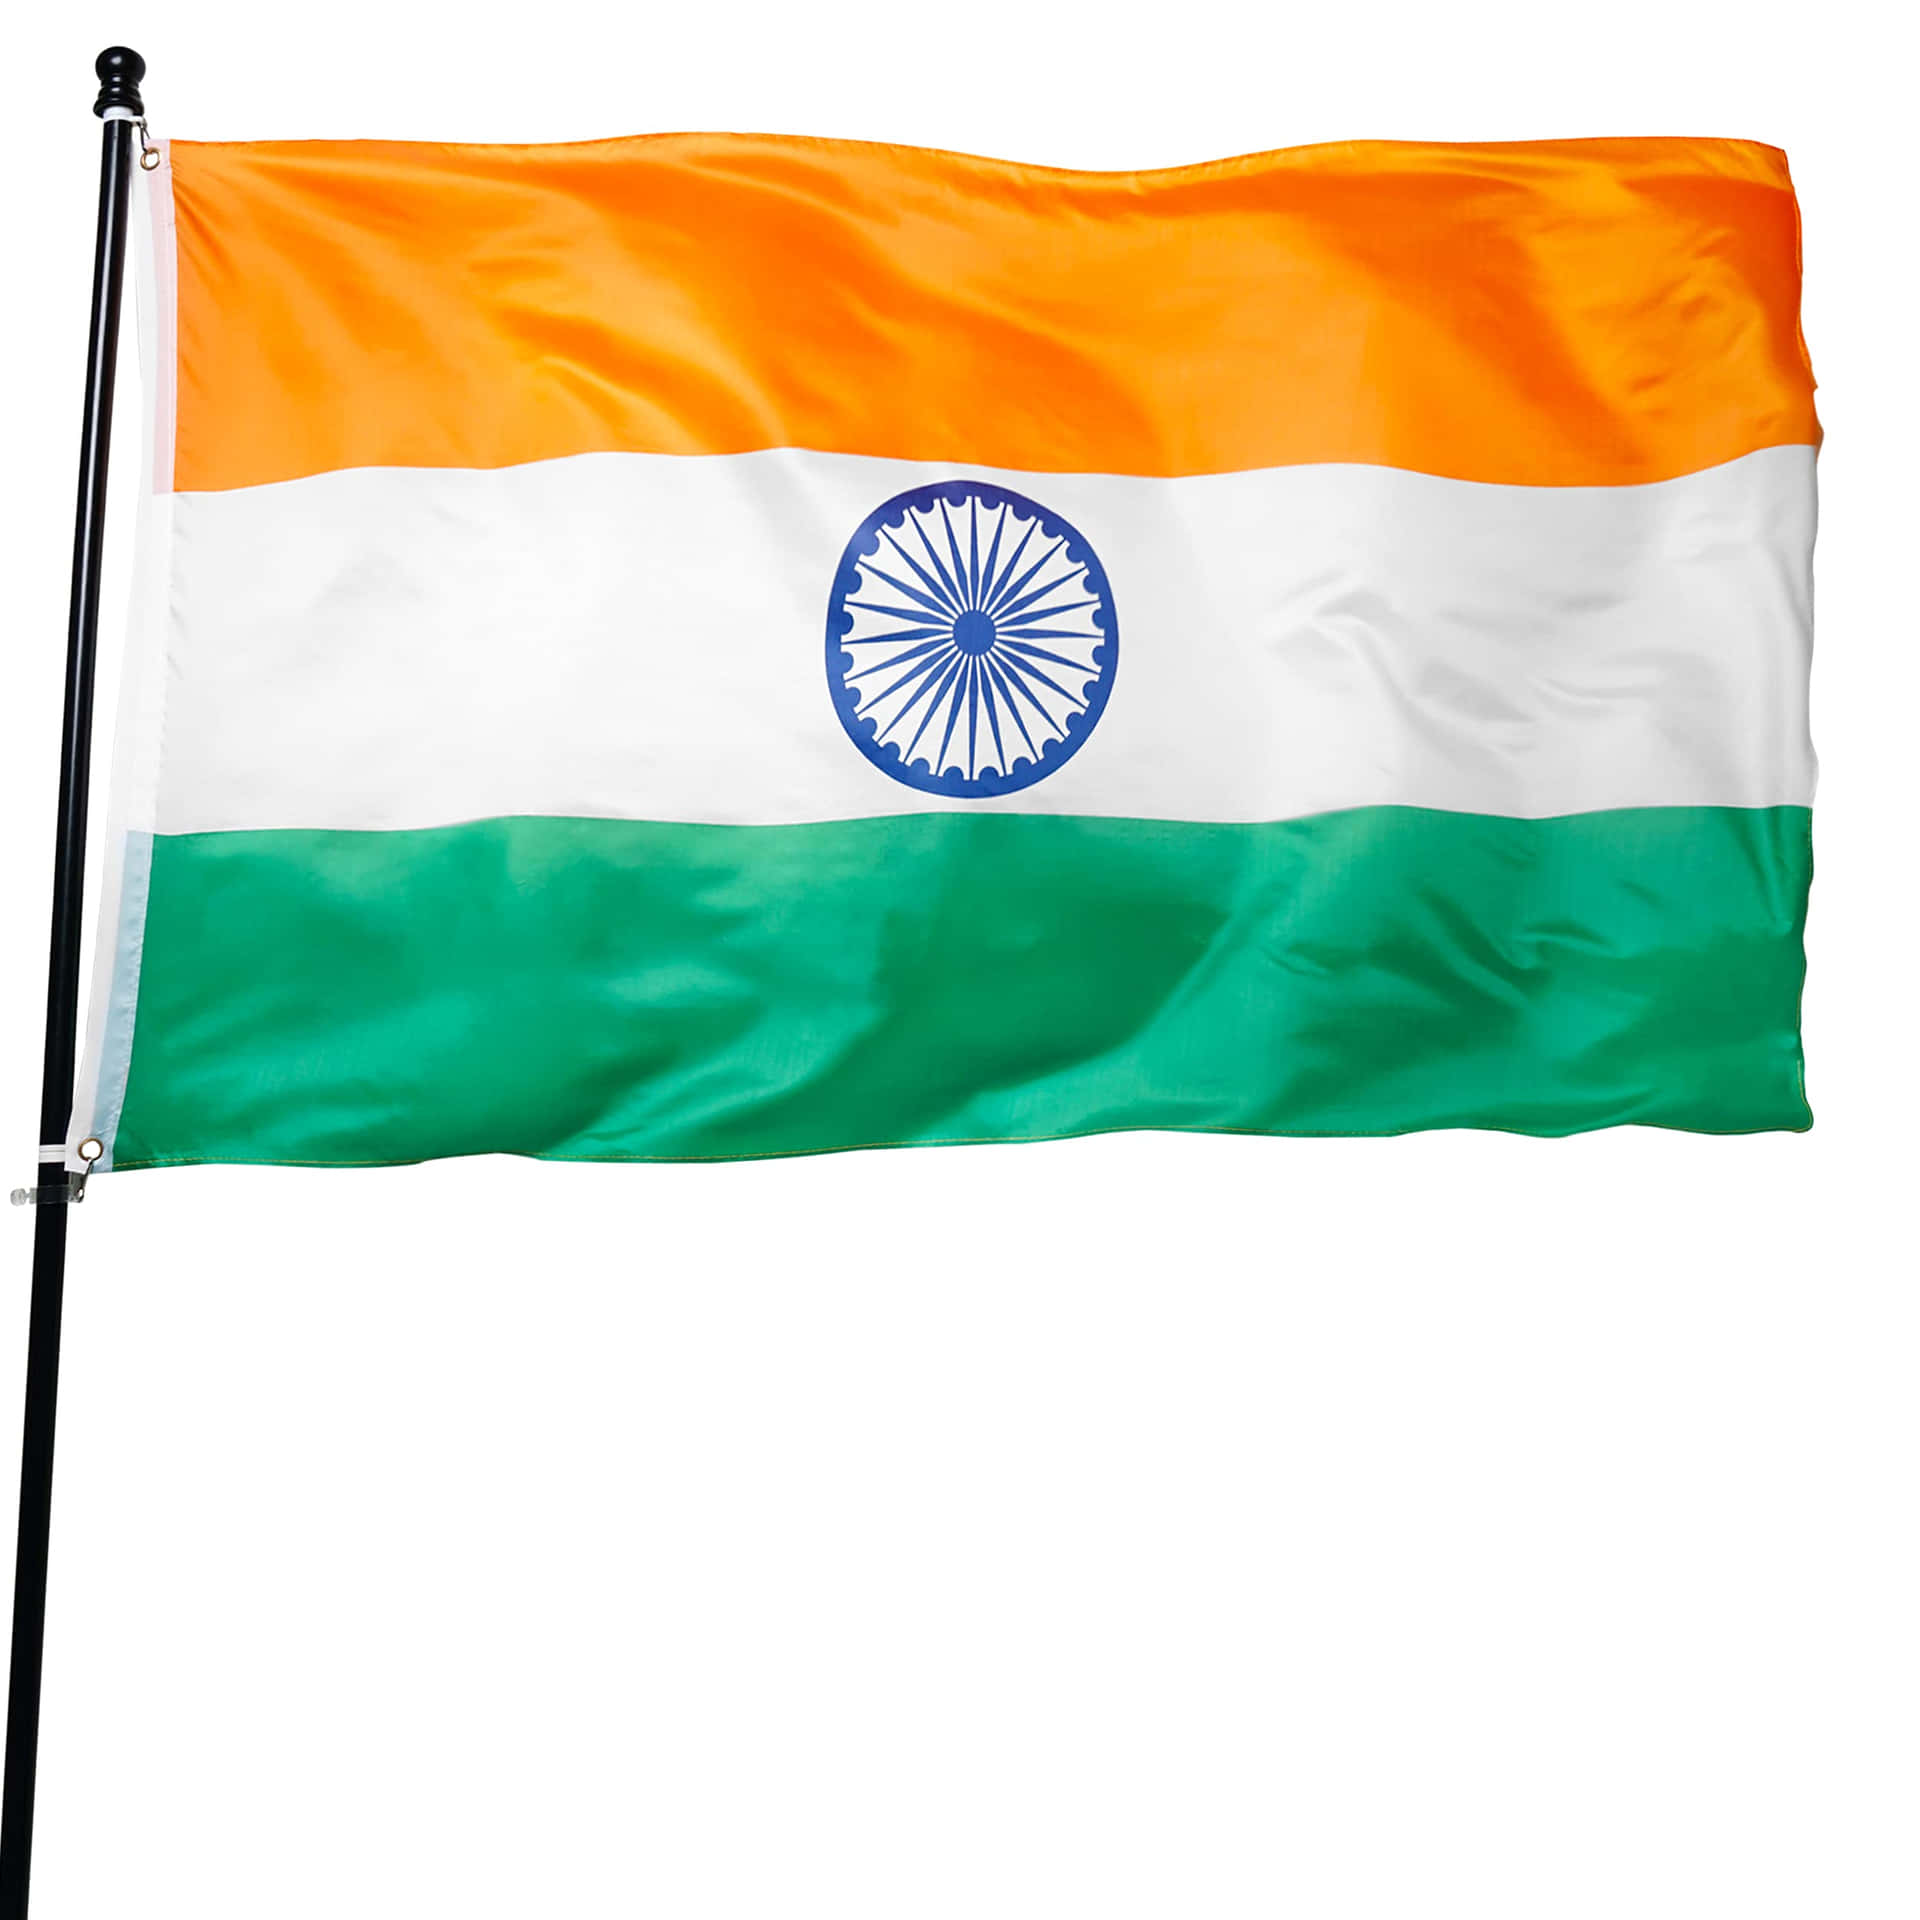 Labandera De La India: Un Símbolo De Esperanza, Patriotismo Y Orgullo.